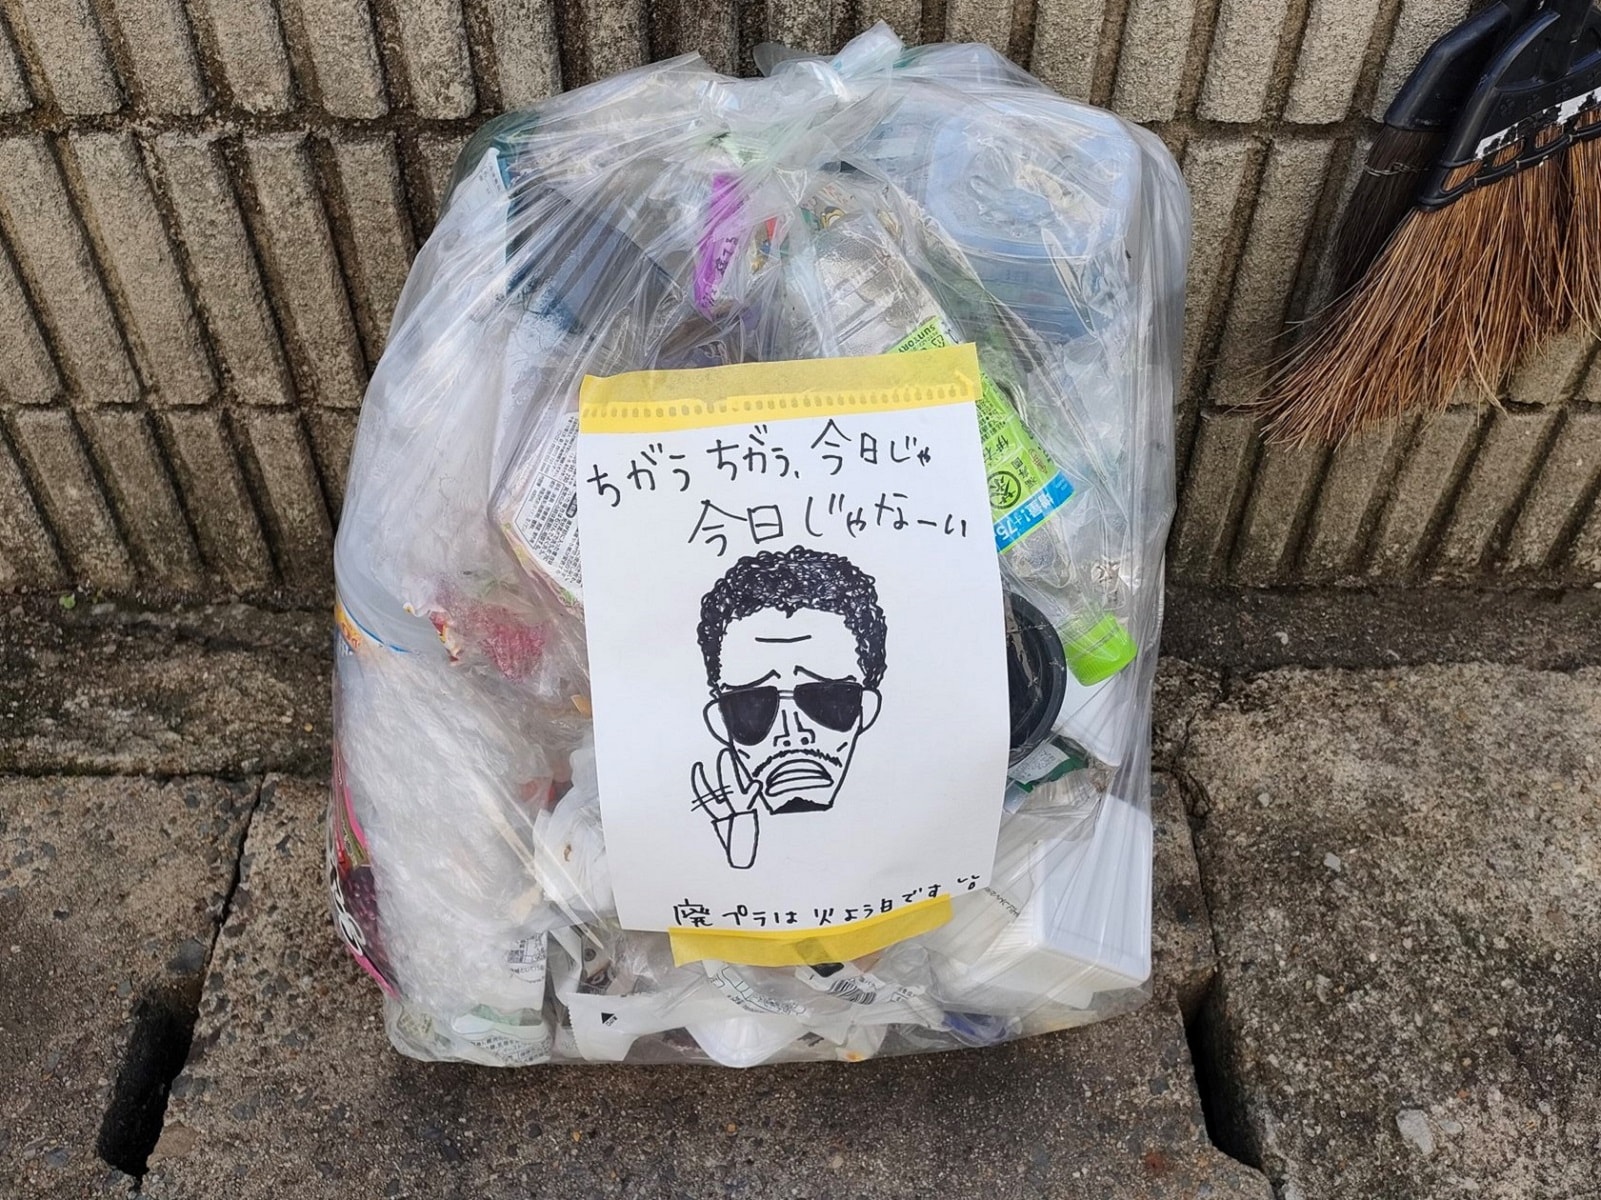 「ちがうちがう、今日じゃ今日じゃなーい」ゴミ袋に貼られた“鈴木雅之”風メッセージが話題に